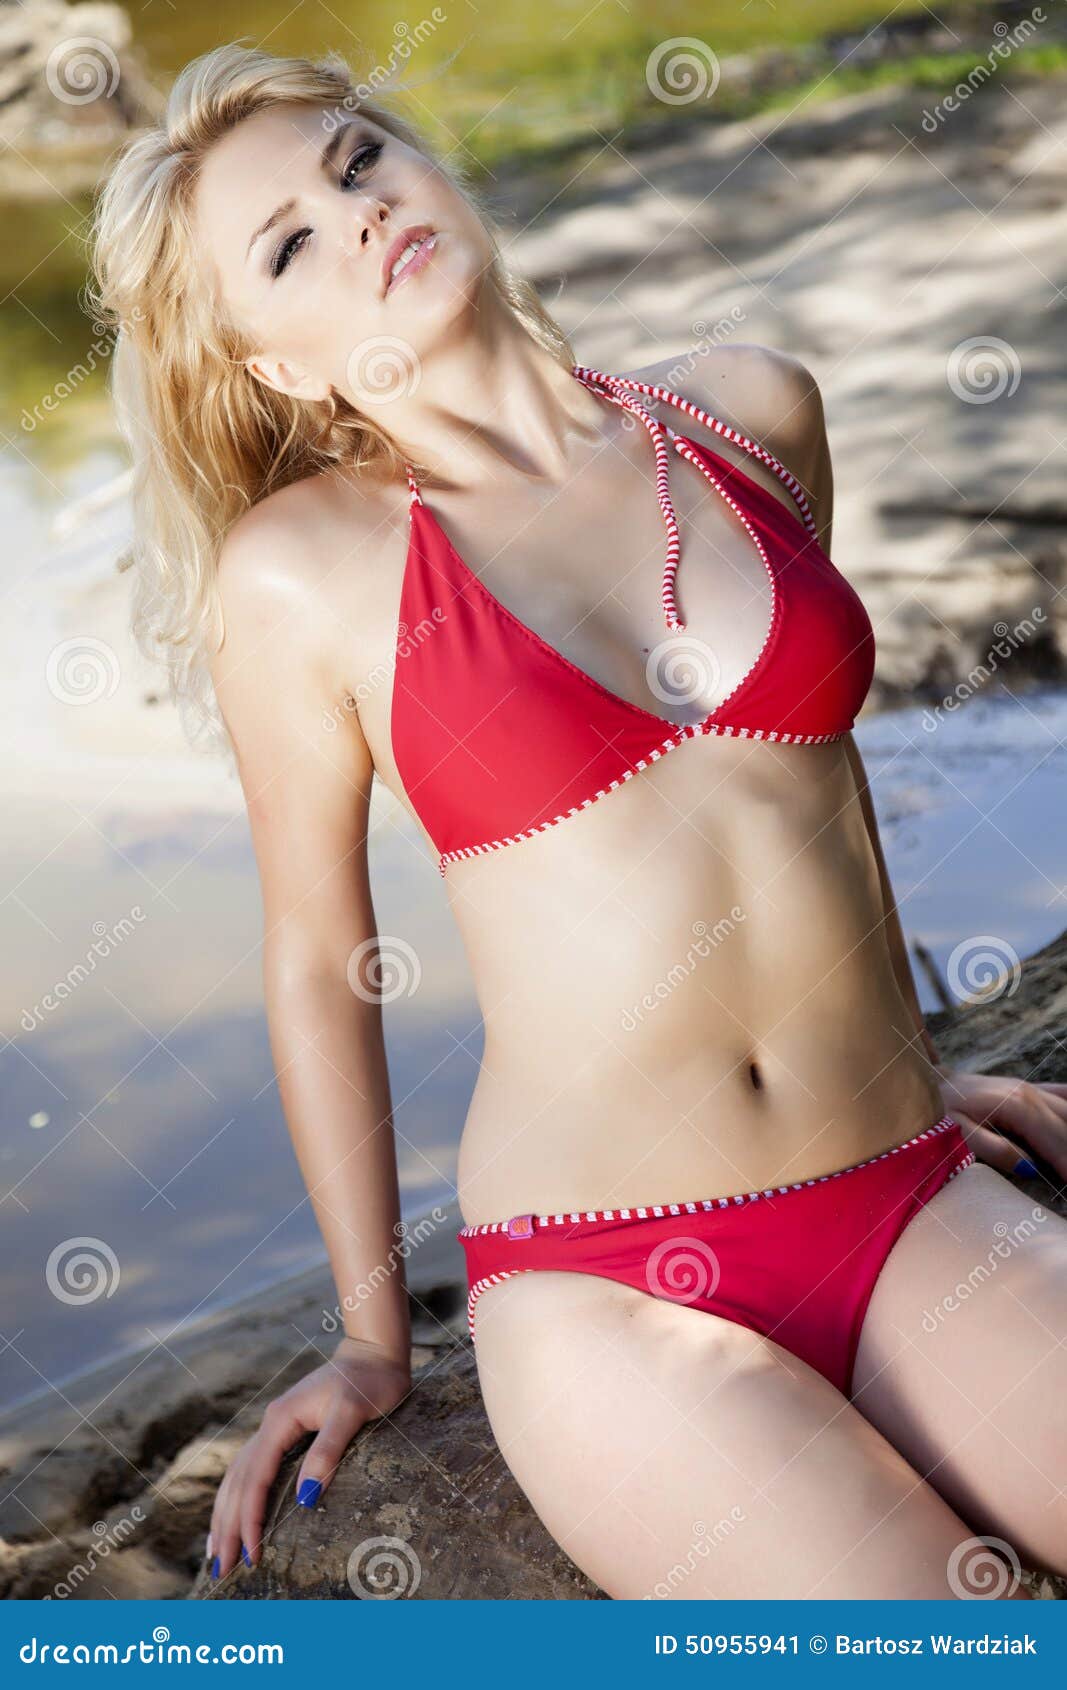 voyeur mature beach blond Porn Photos Hd